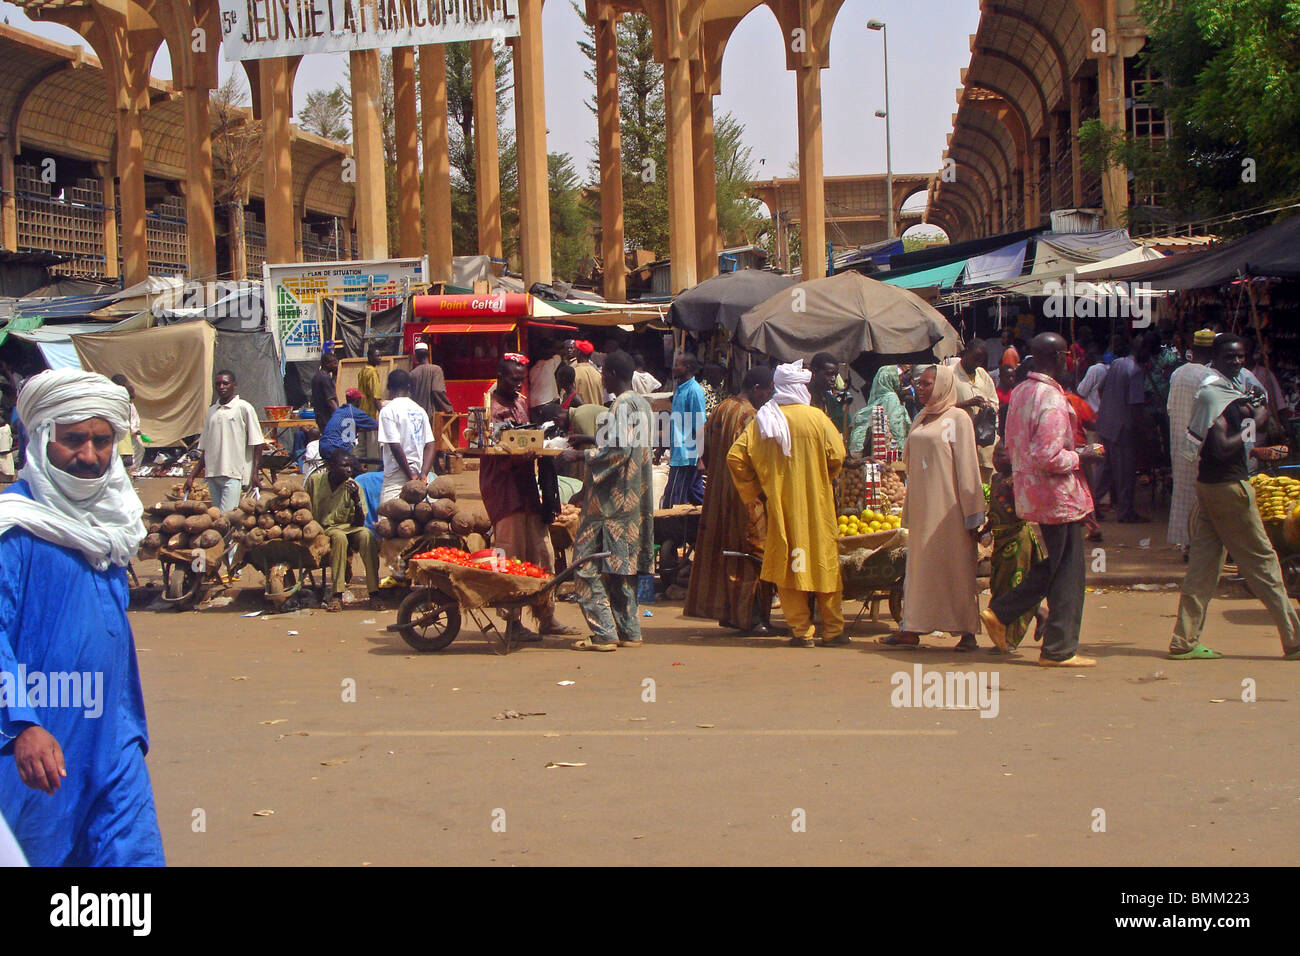 Le Niger, Niamey, foule devant du marché à Niamey Banque D'Images